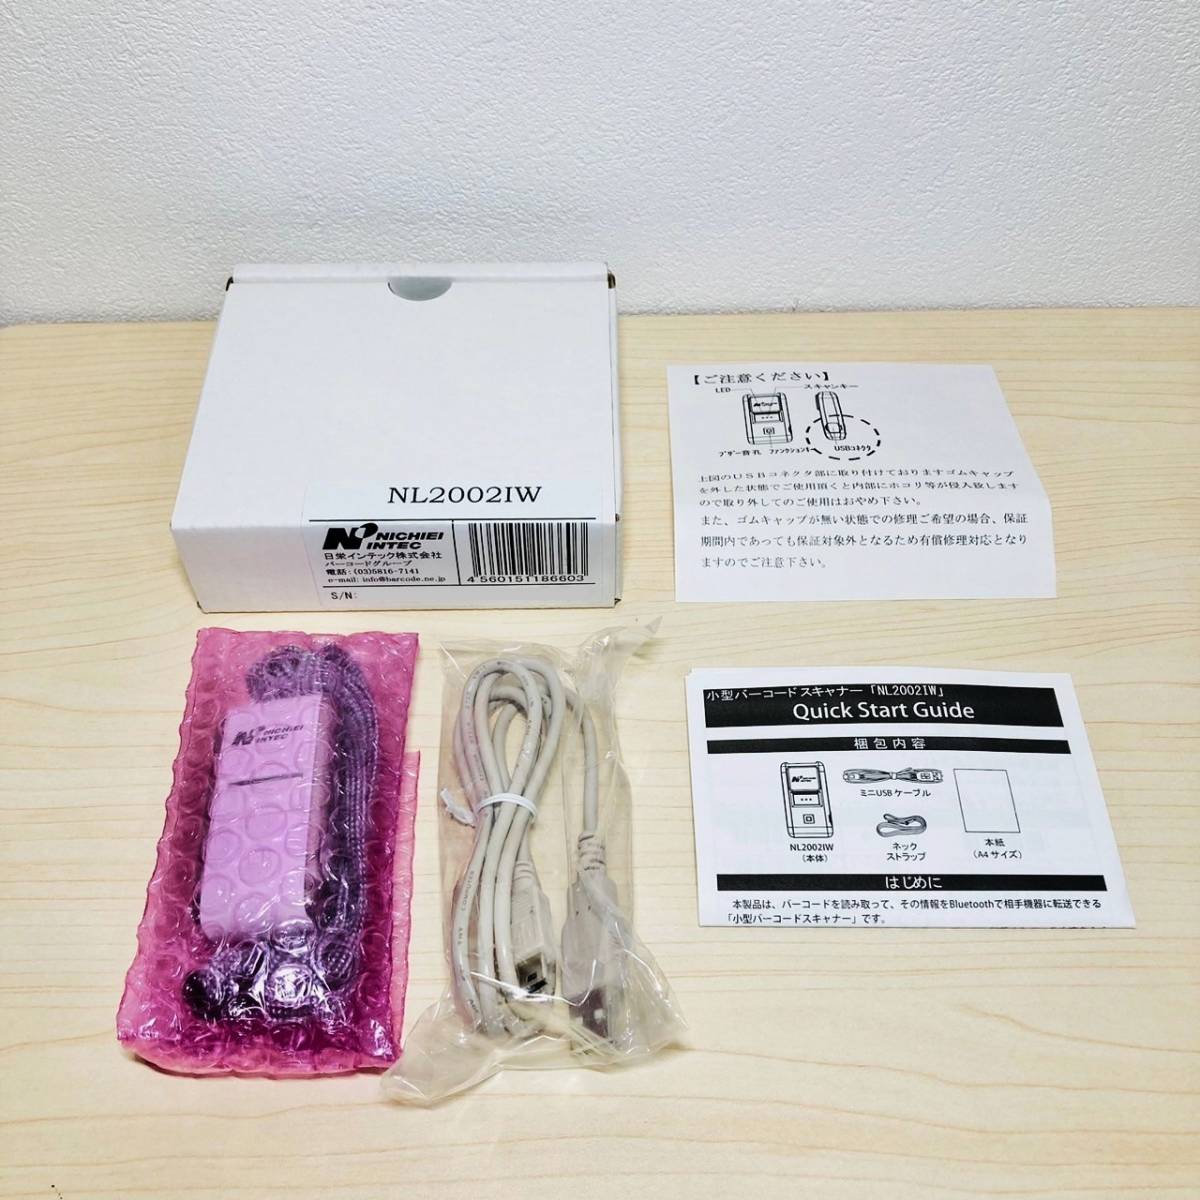 354 ■ 日栄インテック NL2002IW データコレクタ Auto-ID 小型 軽量 Bluetooth USB バーコード スキャナ スキャン ワイヤレス 無線_画像1